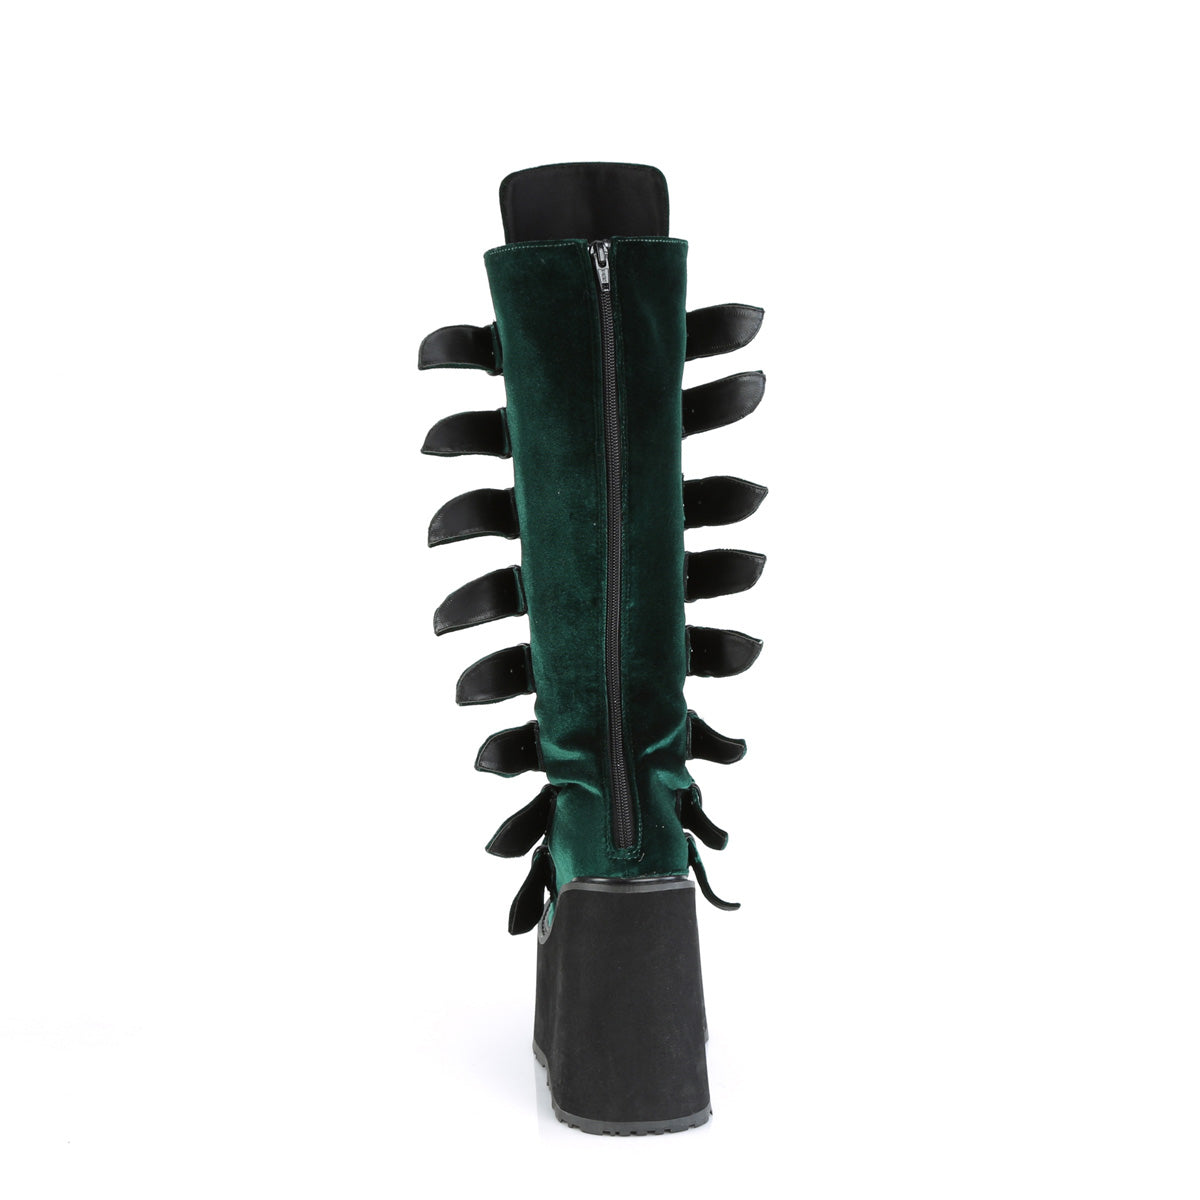 DemoniaCult  Stivali SWING-815 velluto di smeraldo